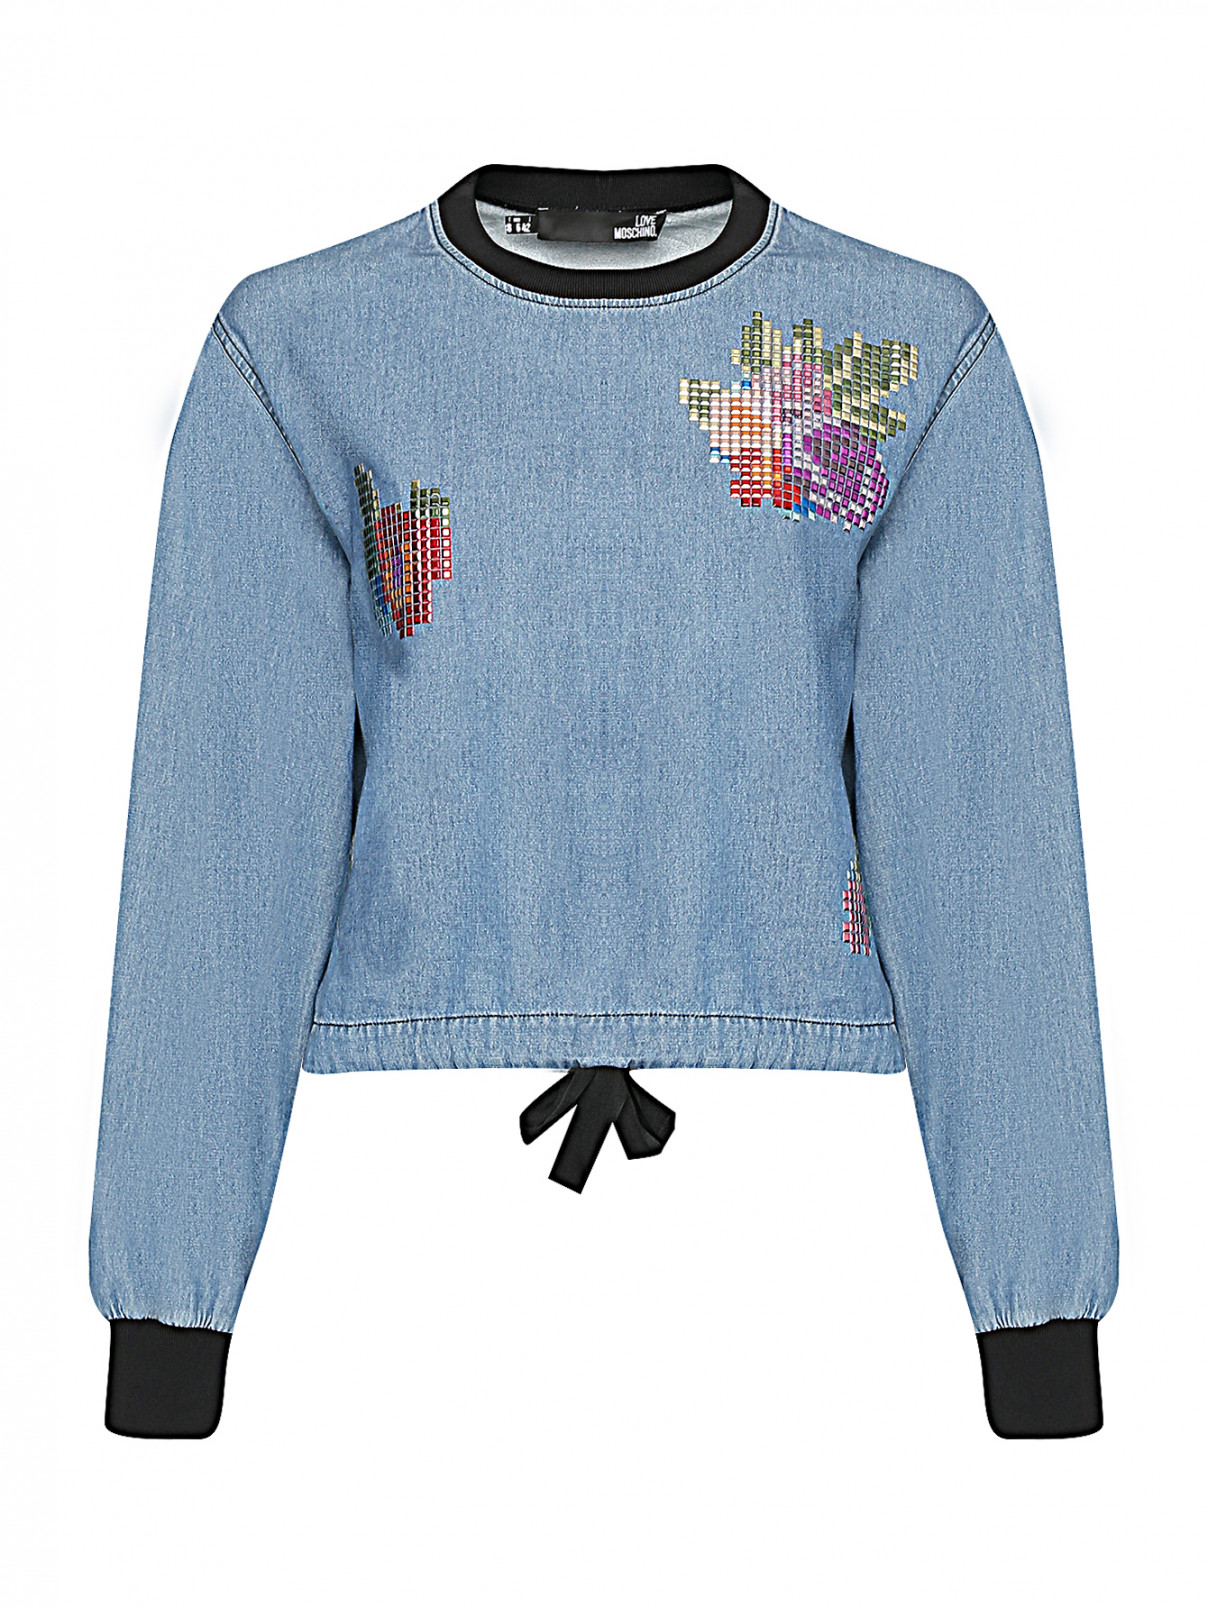 Блуза с декоративной аппликацией Love Moschino  –  Общий вид  – Цвет:  Синий